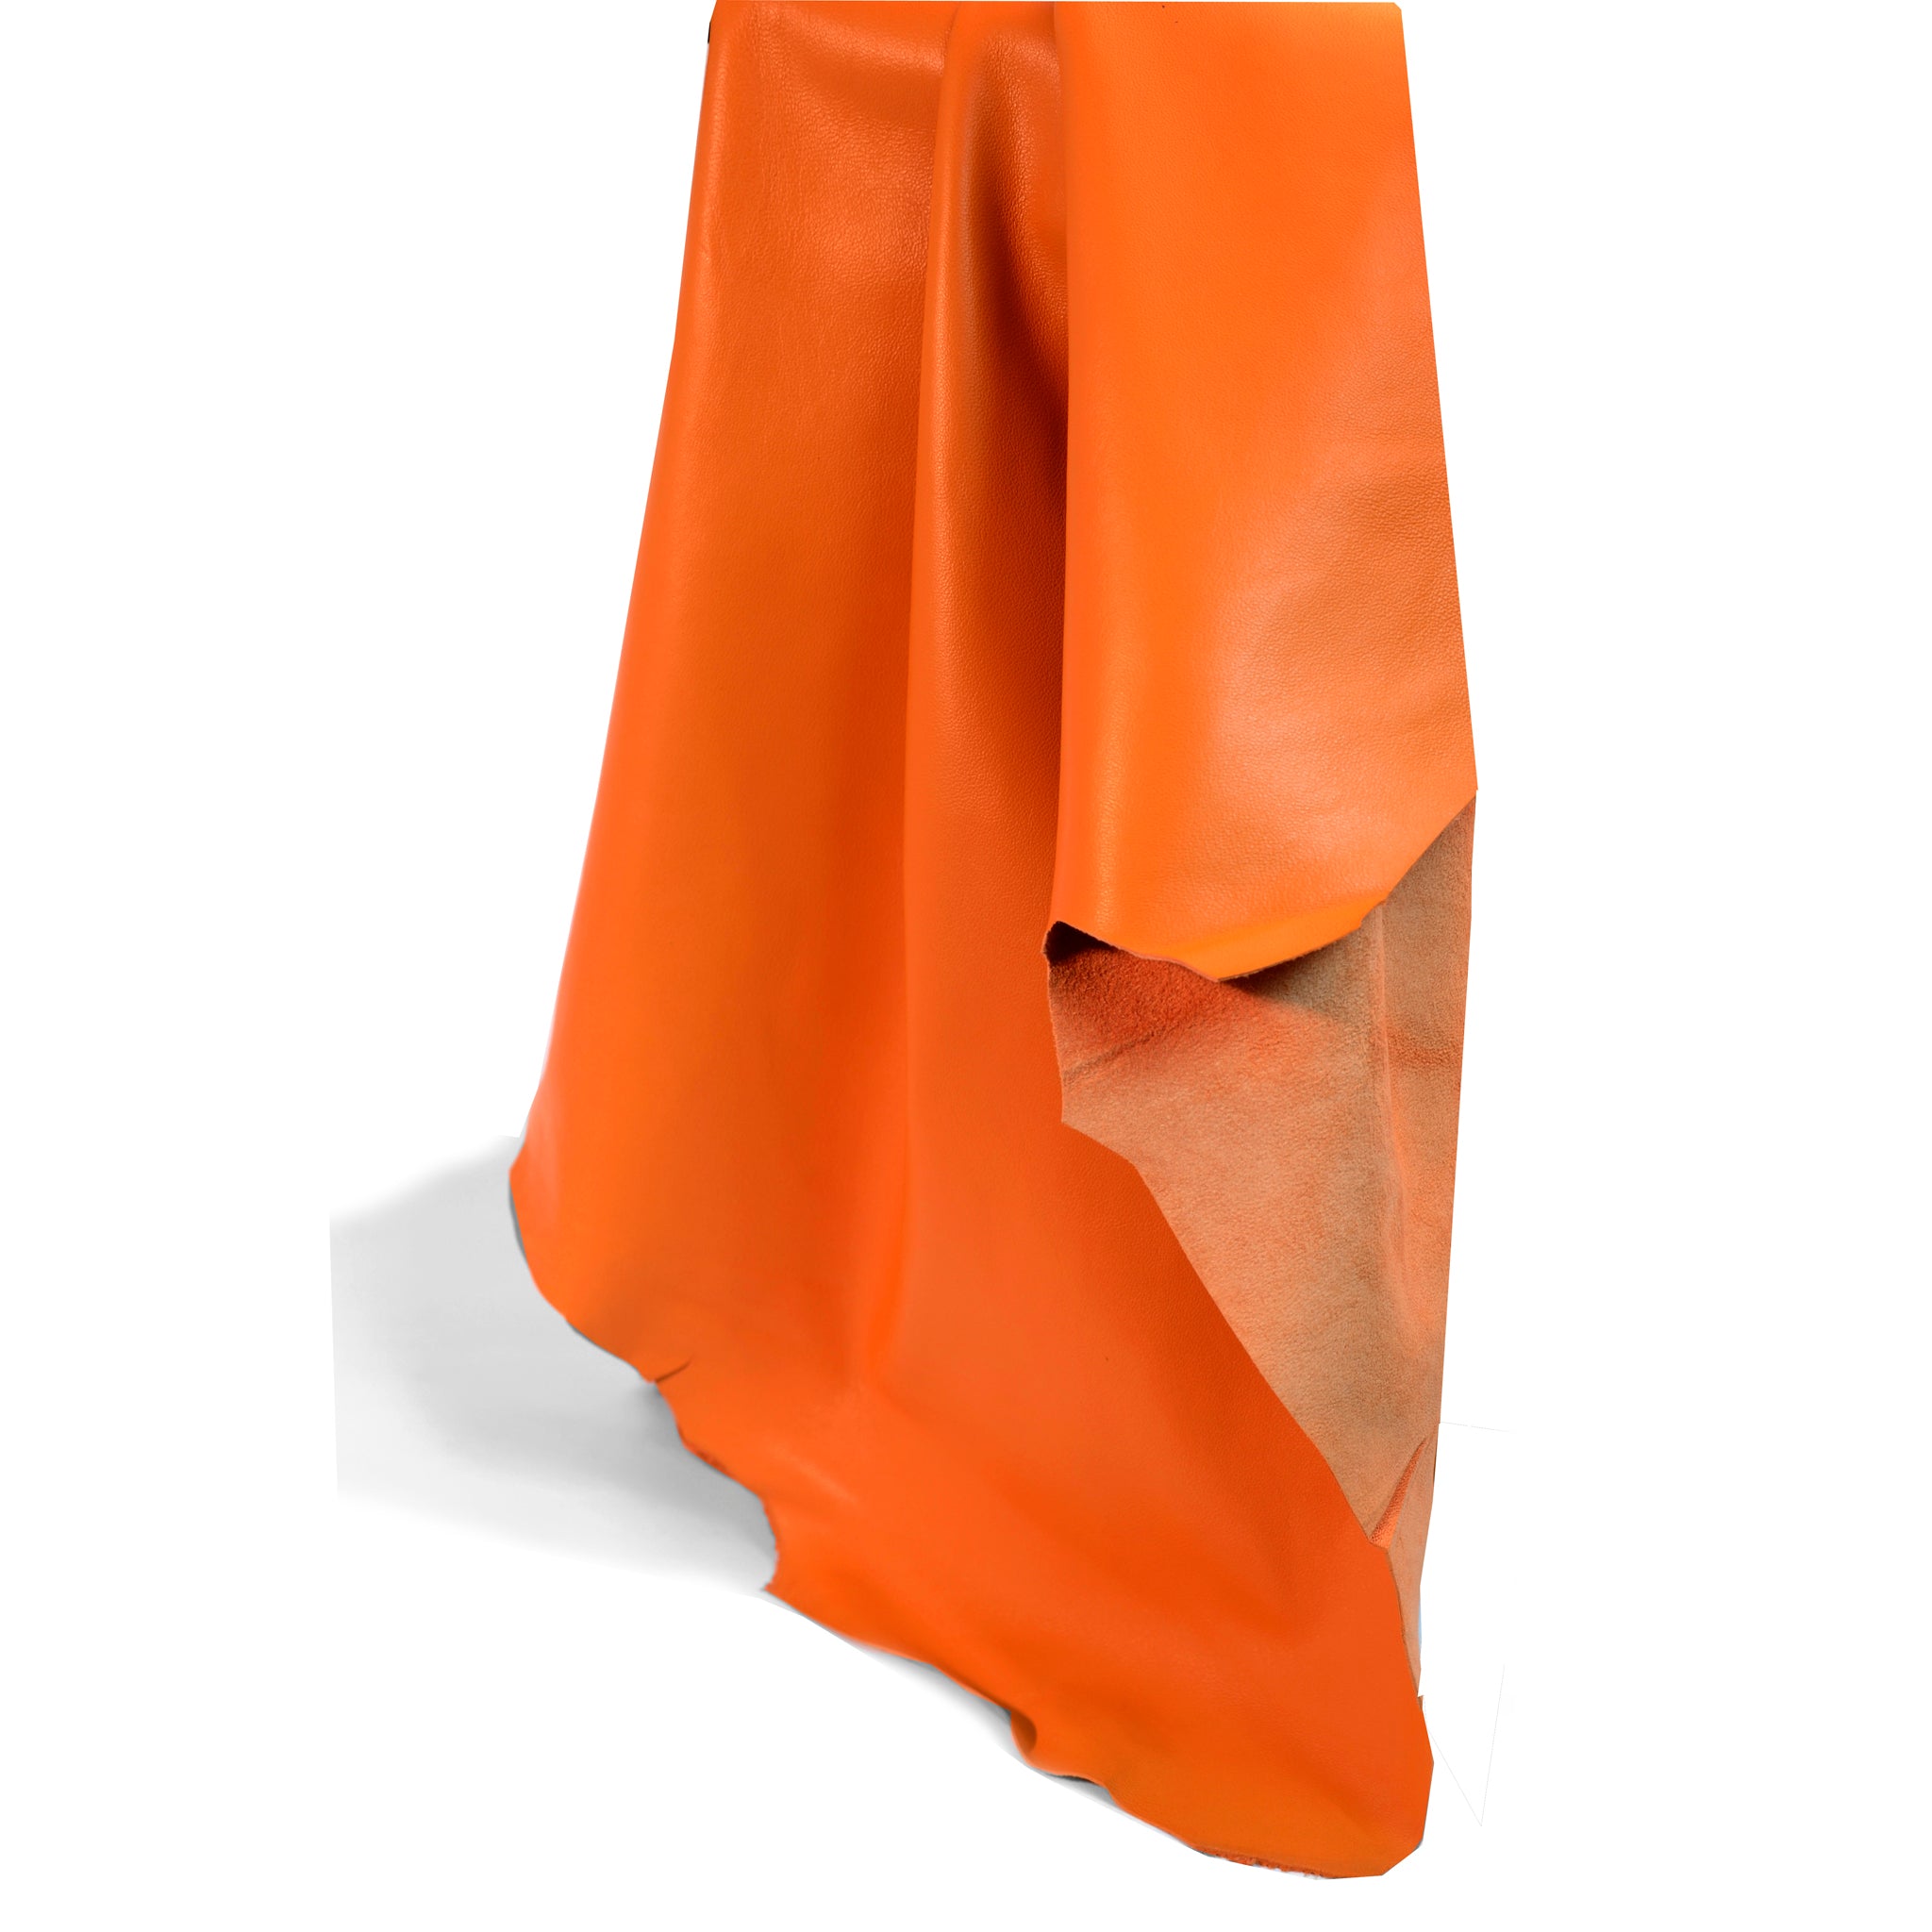 Orange Lamb Clothing Leather from Identity Leathercraft